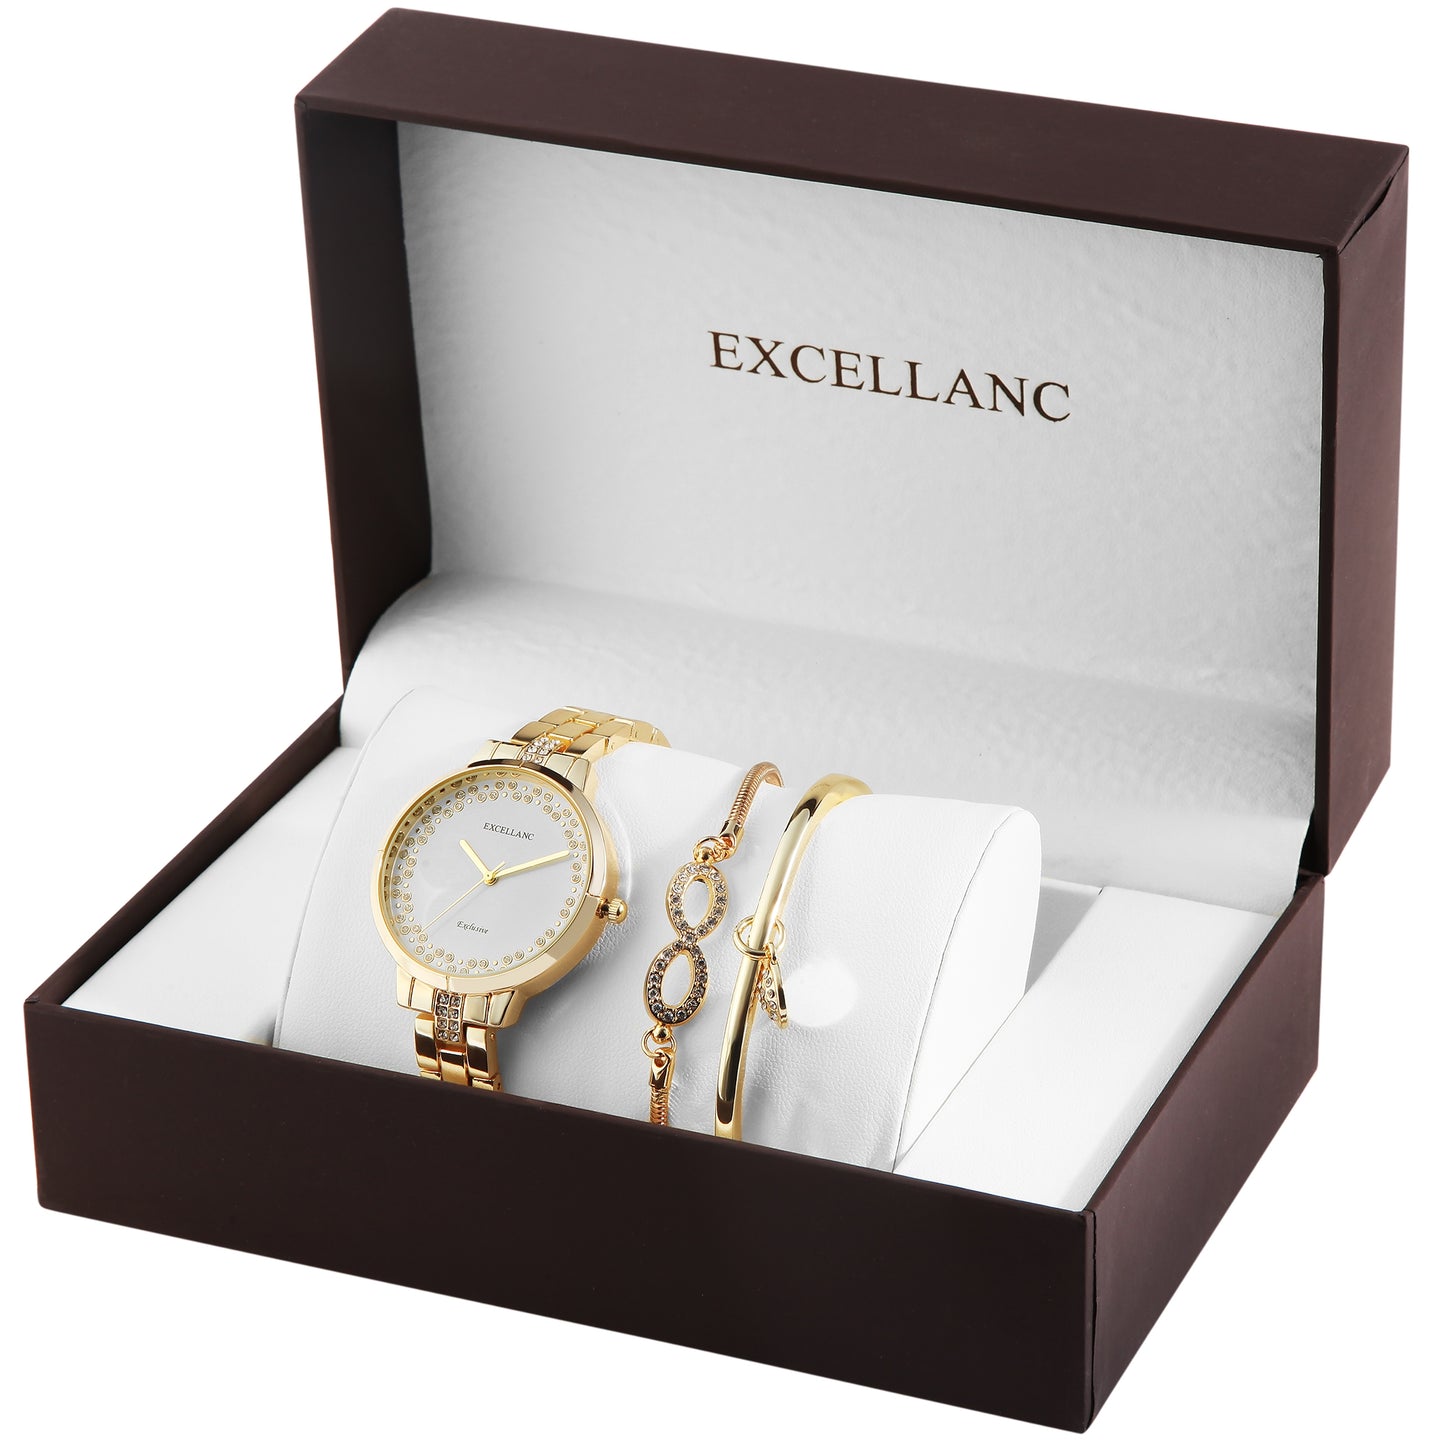 Excellanc dárkový set hodinek: dámské hodinky +2 náramky, zlatý tón, zlatá barva, vysoce kvalitní křemenný mechanismus, ciferník v bílé barvě